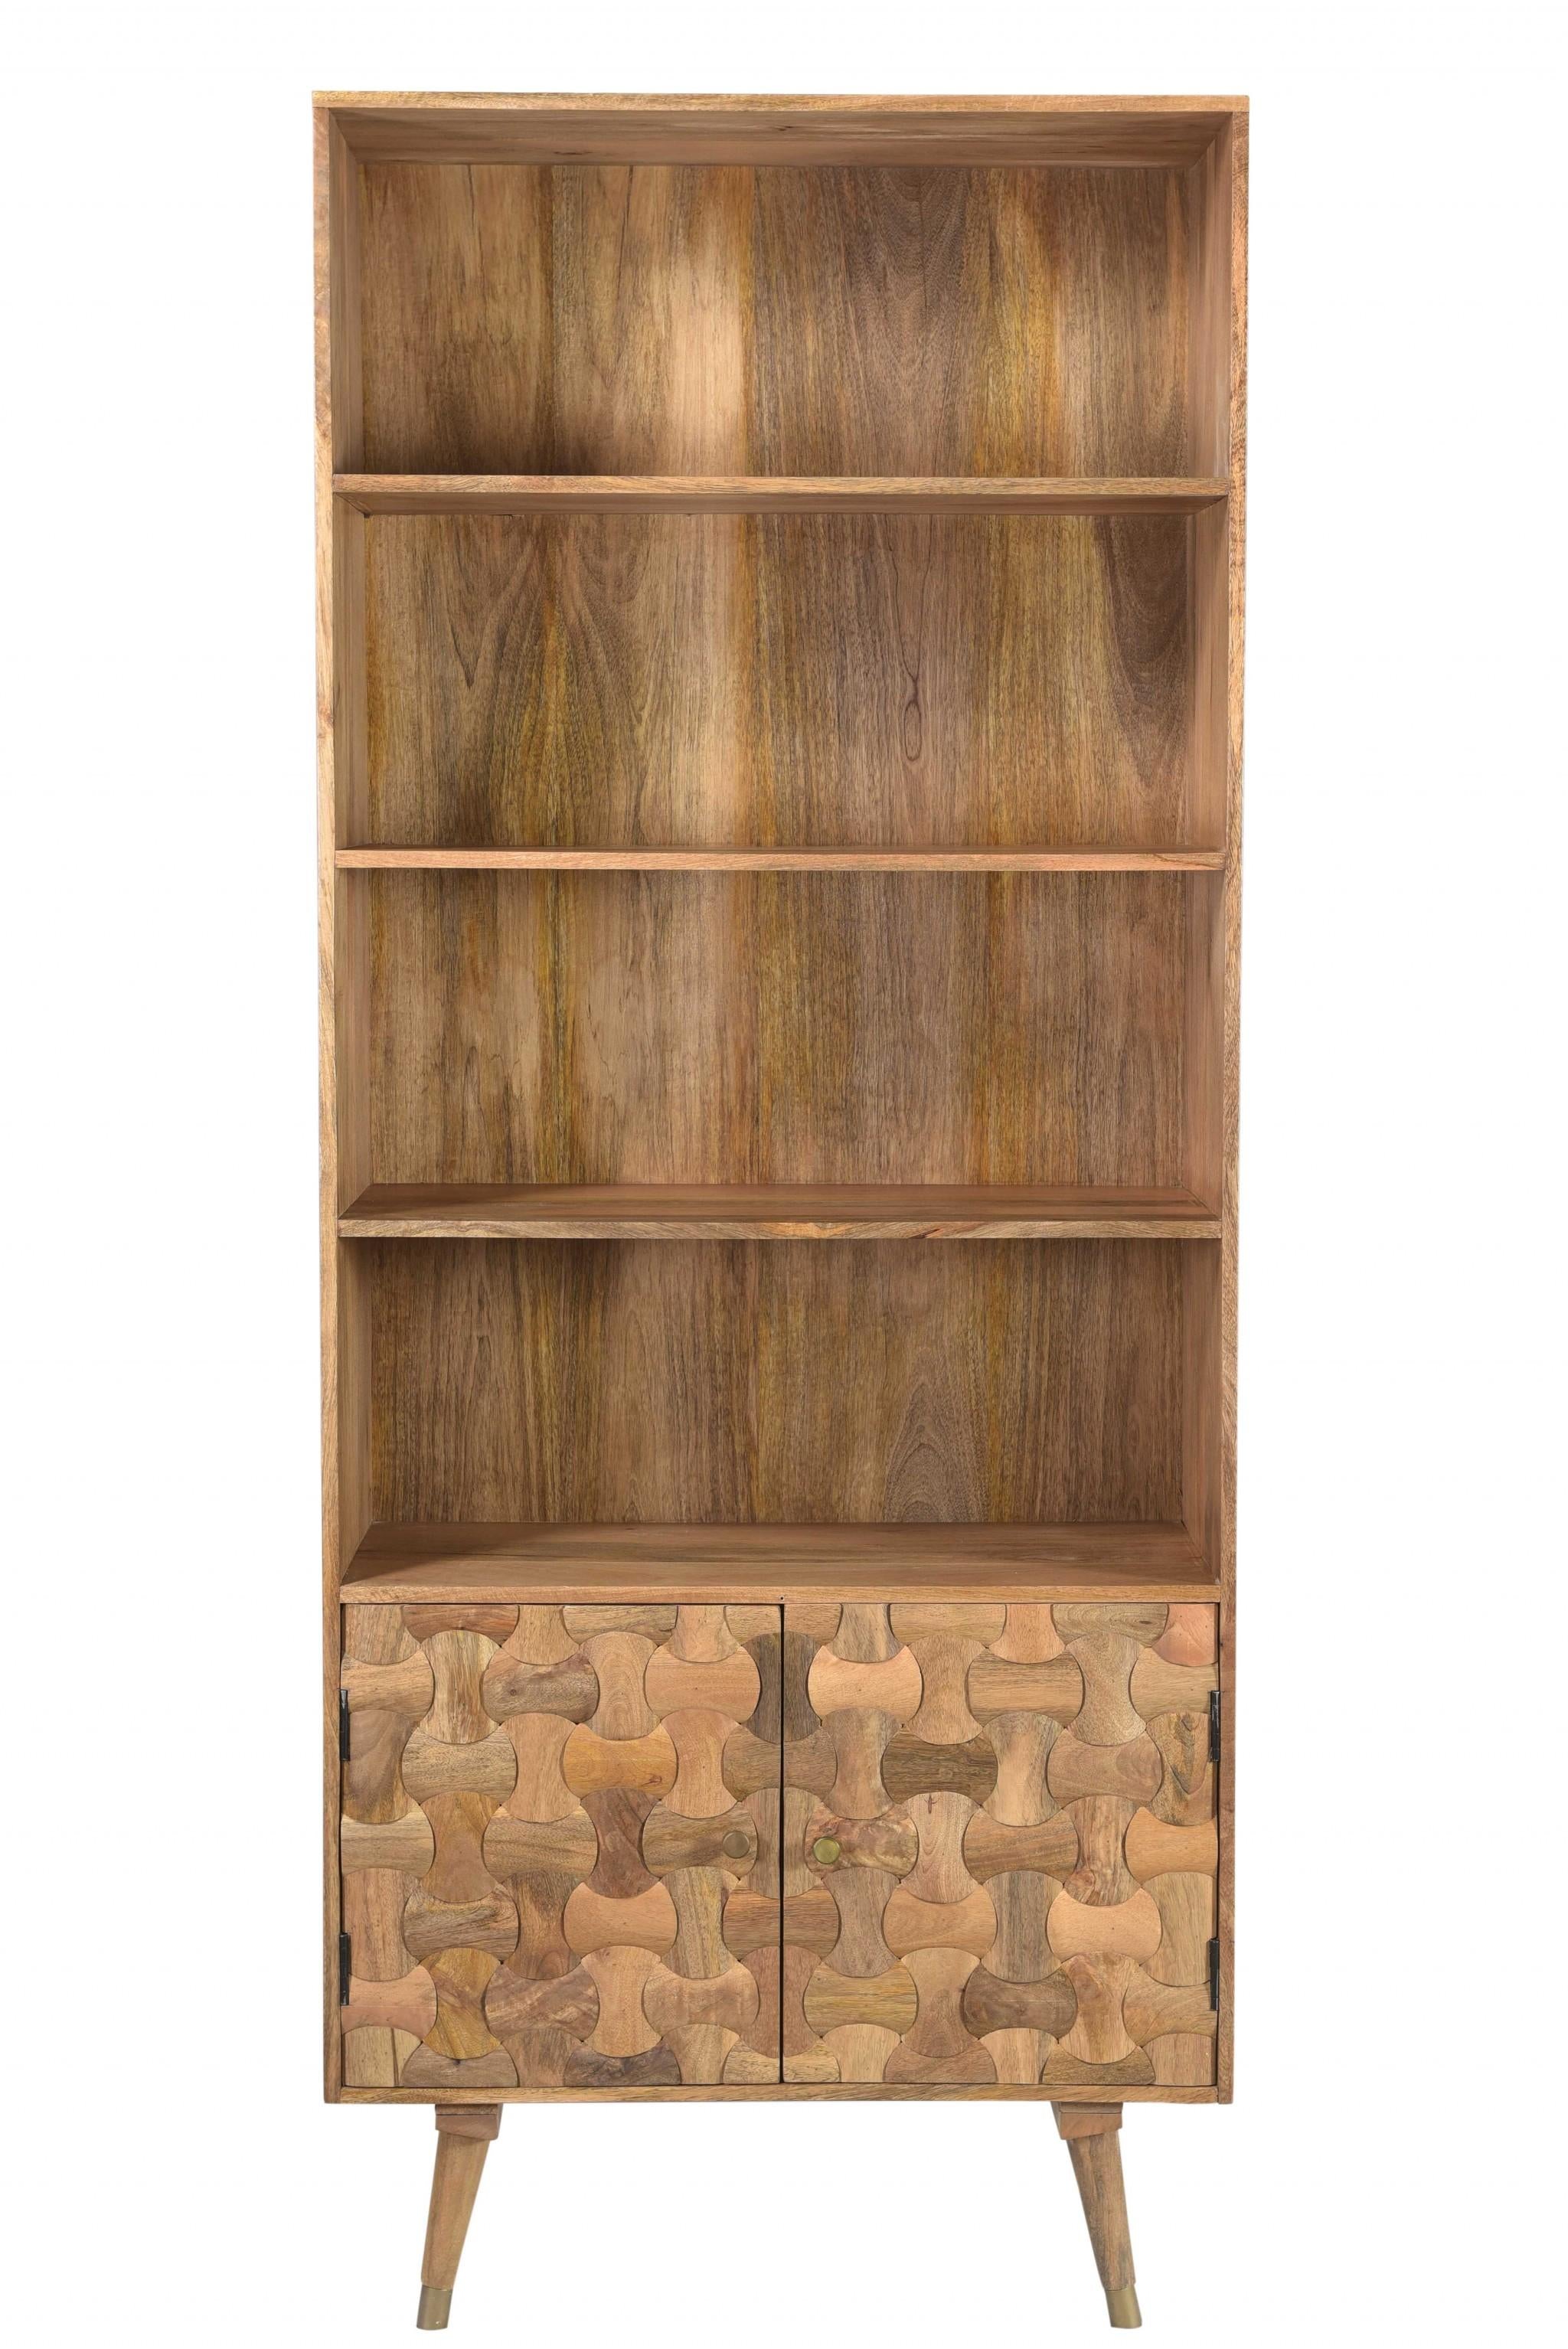 Honey Wood Small Bookshelf